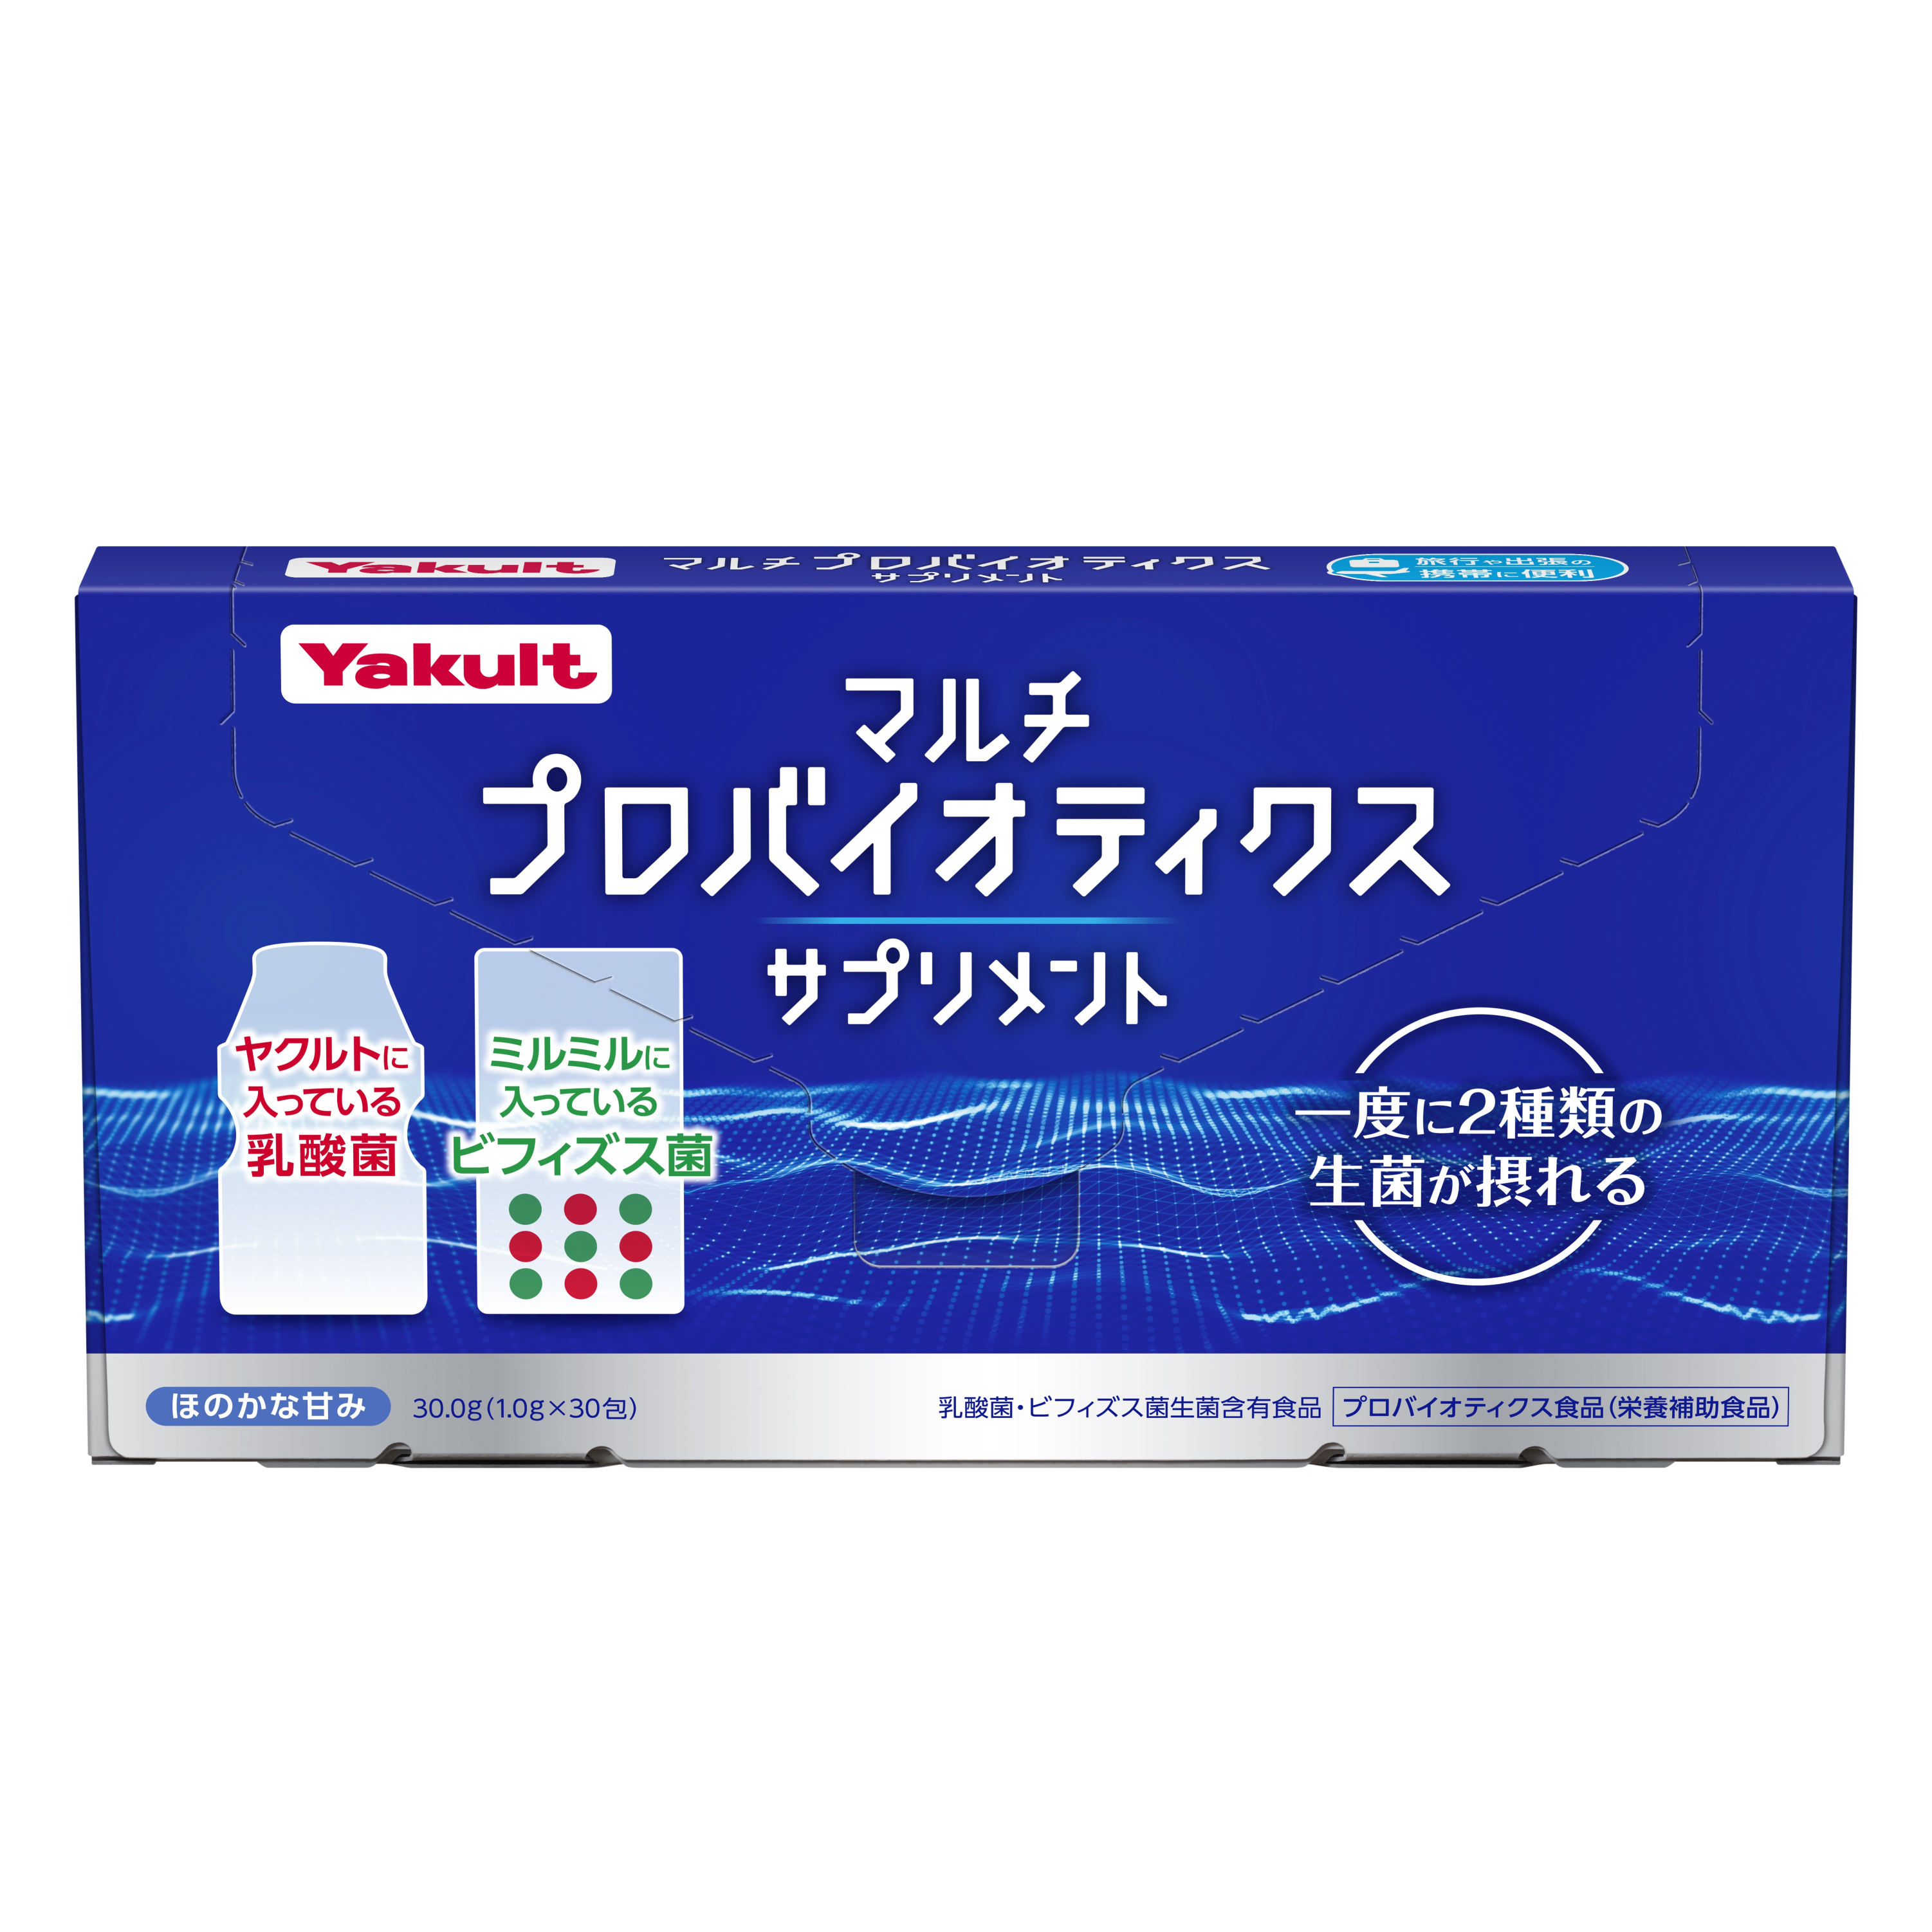 Yakult (ヤクルト) マルチプロバイオティクスサプリメント (乳酸菌 ビフィズス菌 含有) 顆粒 サプリメント (スティック包装 15包入り